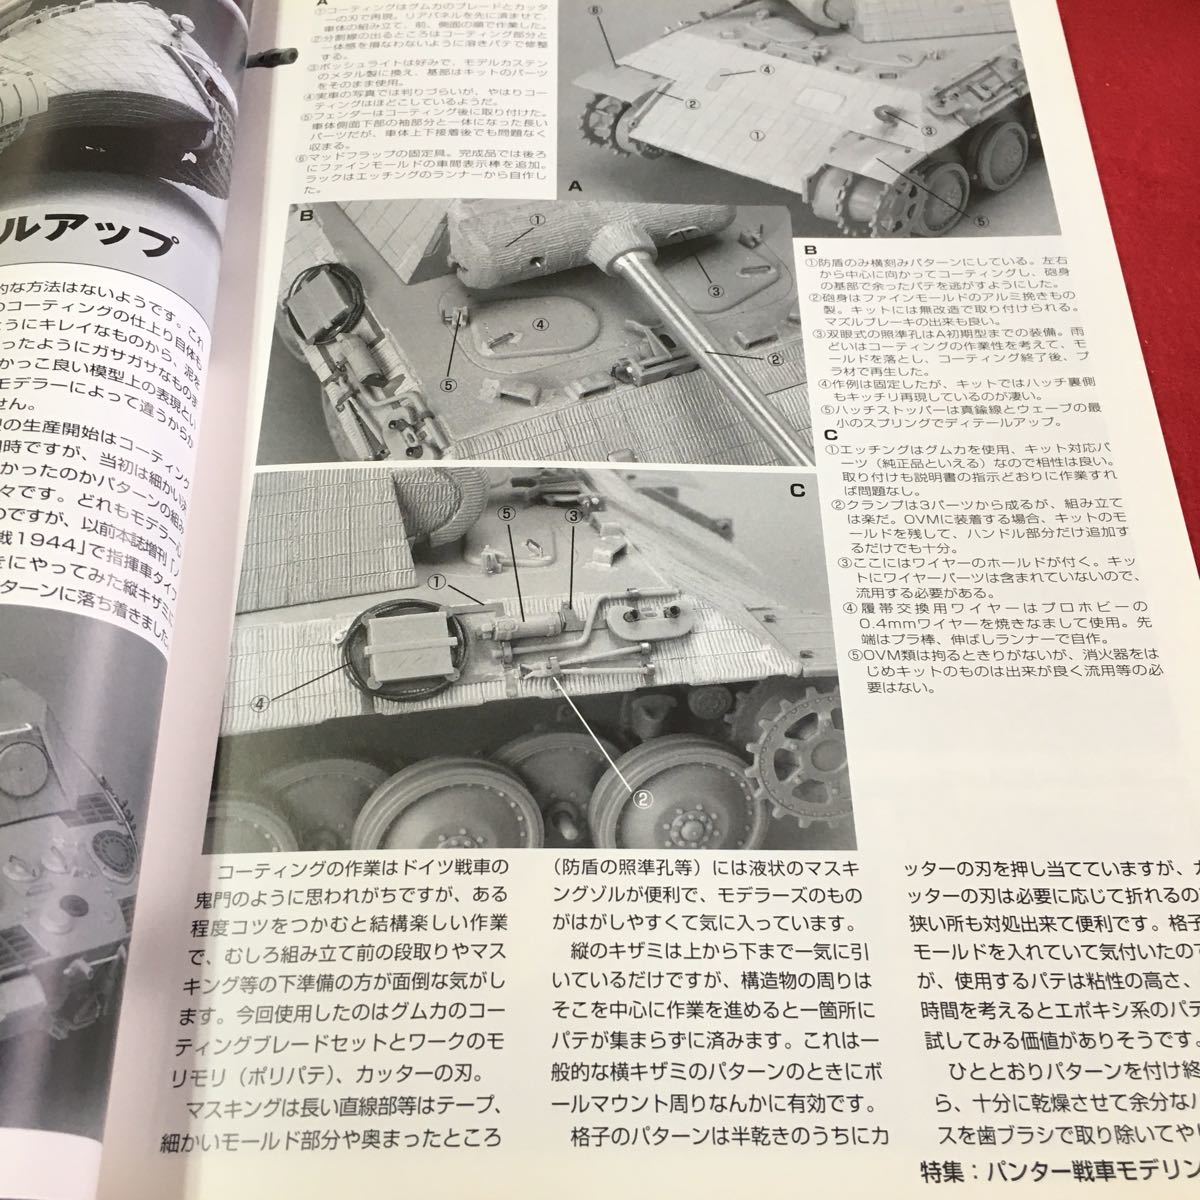 M5b-133 モデルアート 8 特集 パンター戦車モデリング 第41回 静岡ホビーショーレポート サボイアマルケッティ 平成14年8月1日発行_画像5